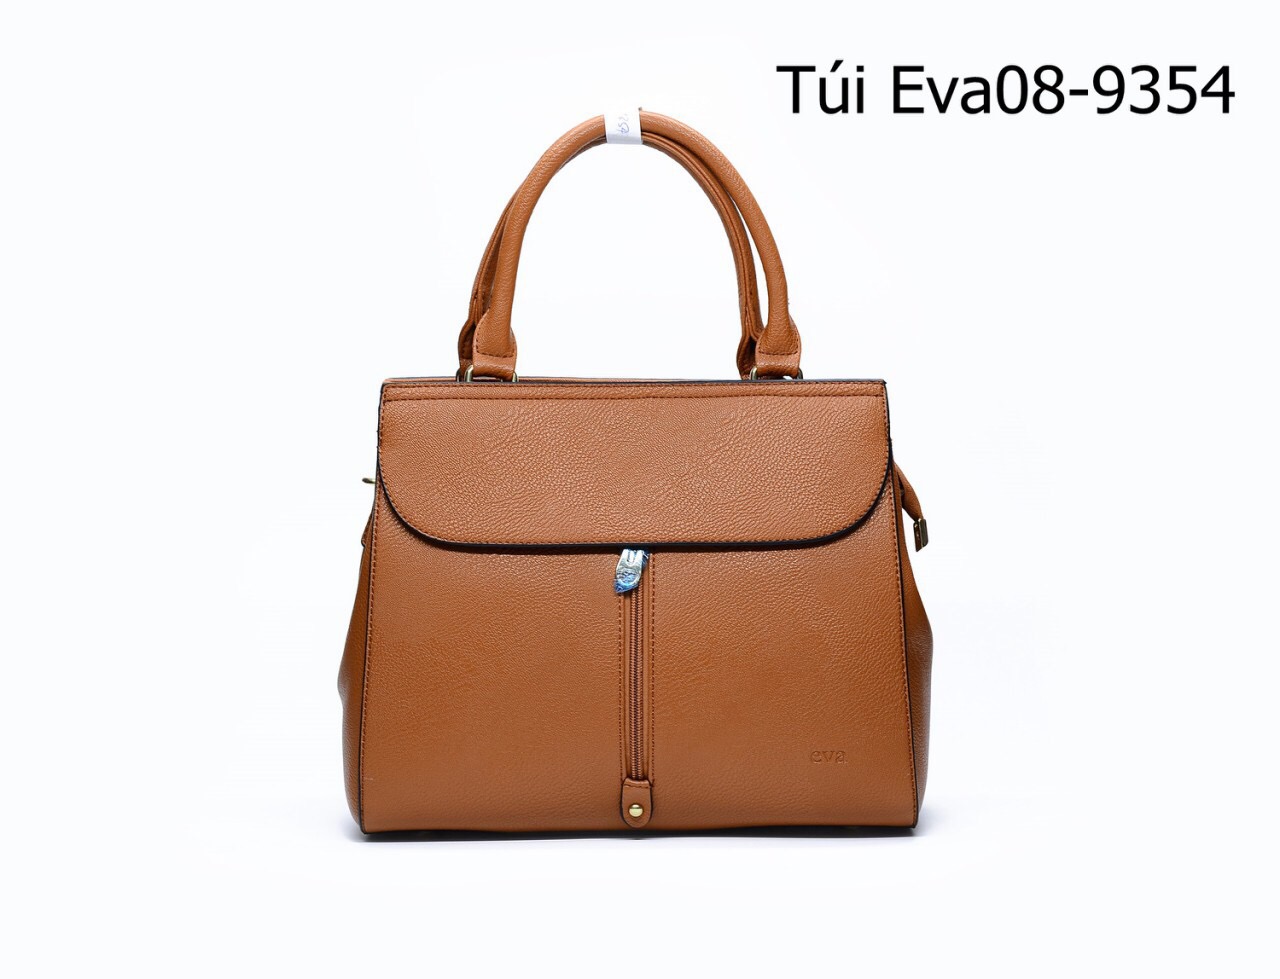 Túi xách nữ Eva08-9354 thiết kế dáng to phối khóa đứng độc đáo, sành điệu